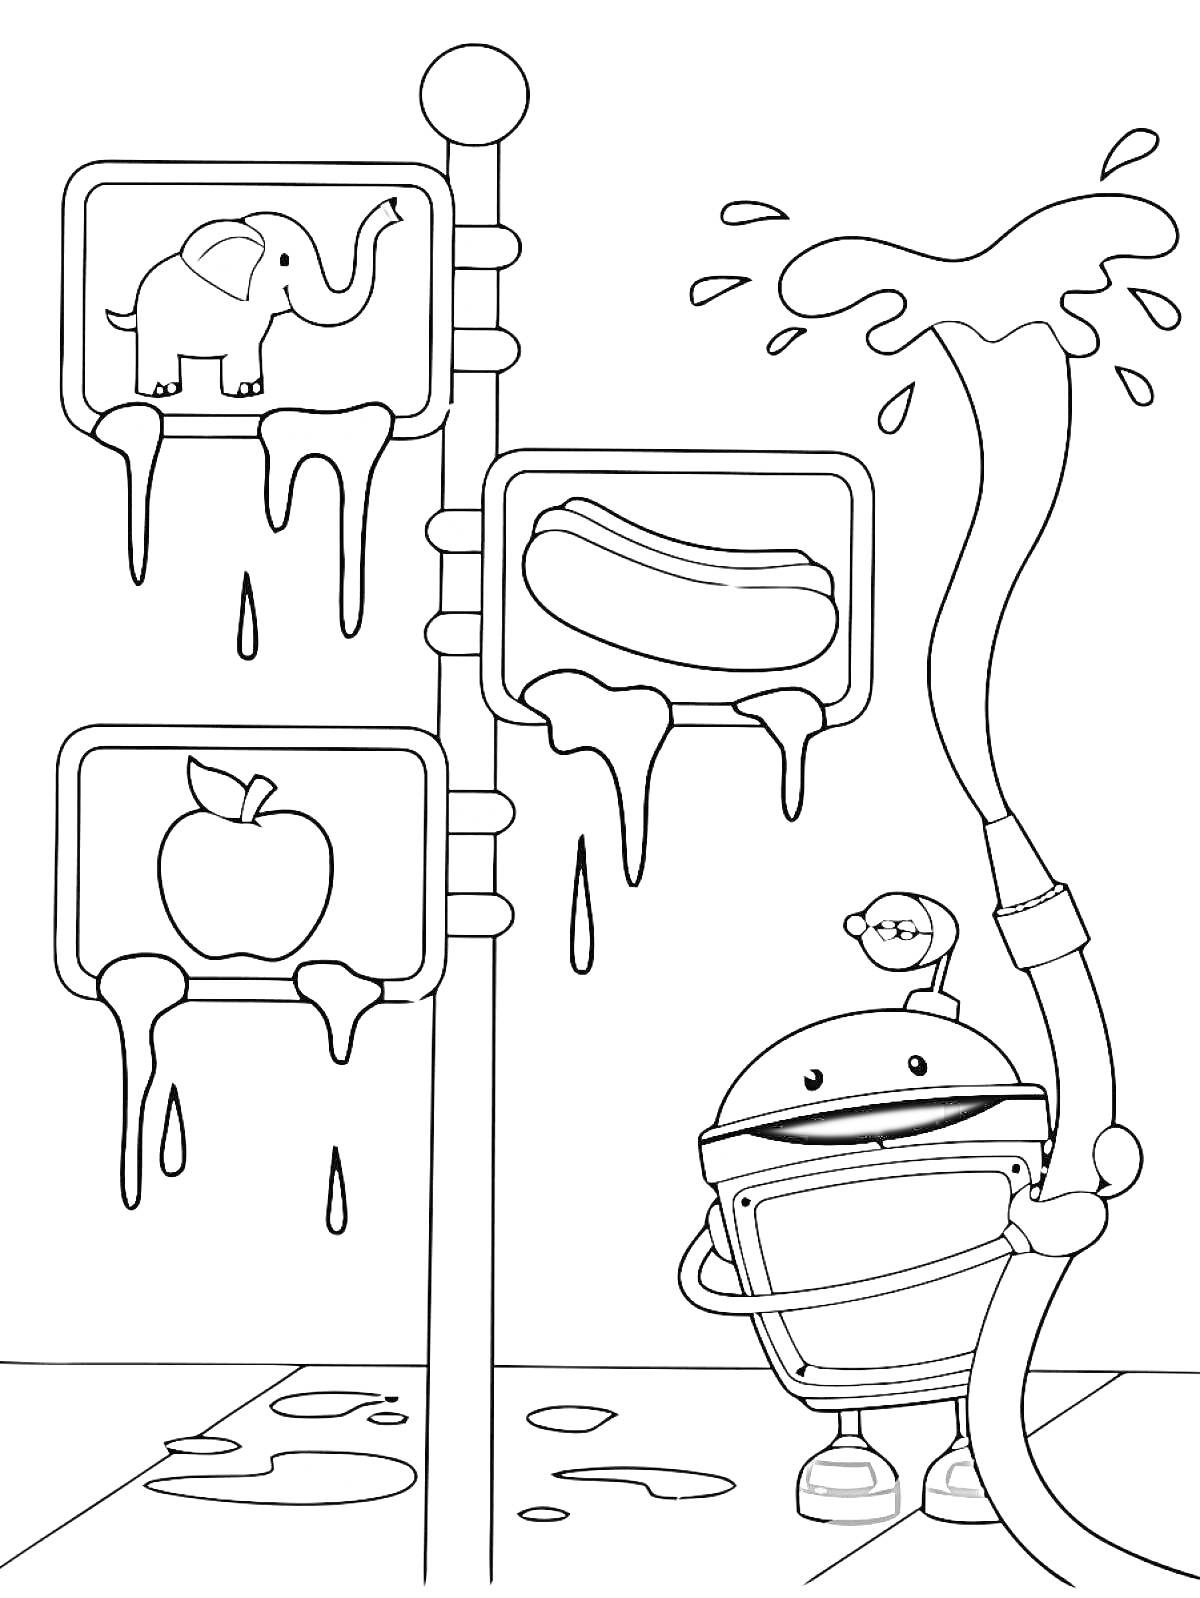 Раскраска Робот с водным шлангом и три мокрых знака (слон, хот-дог, яблоко)